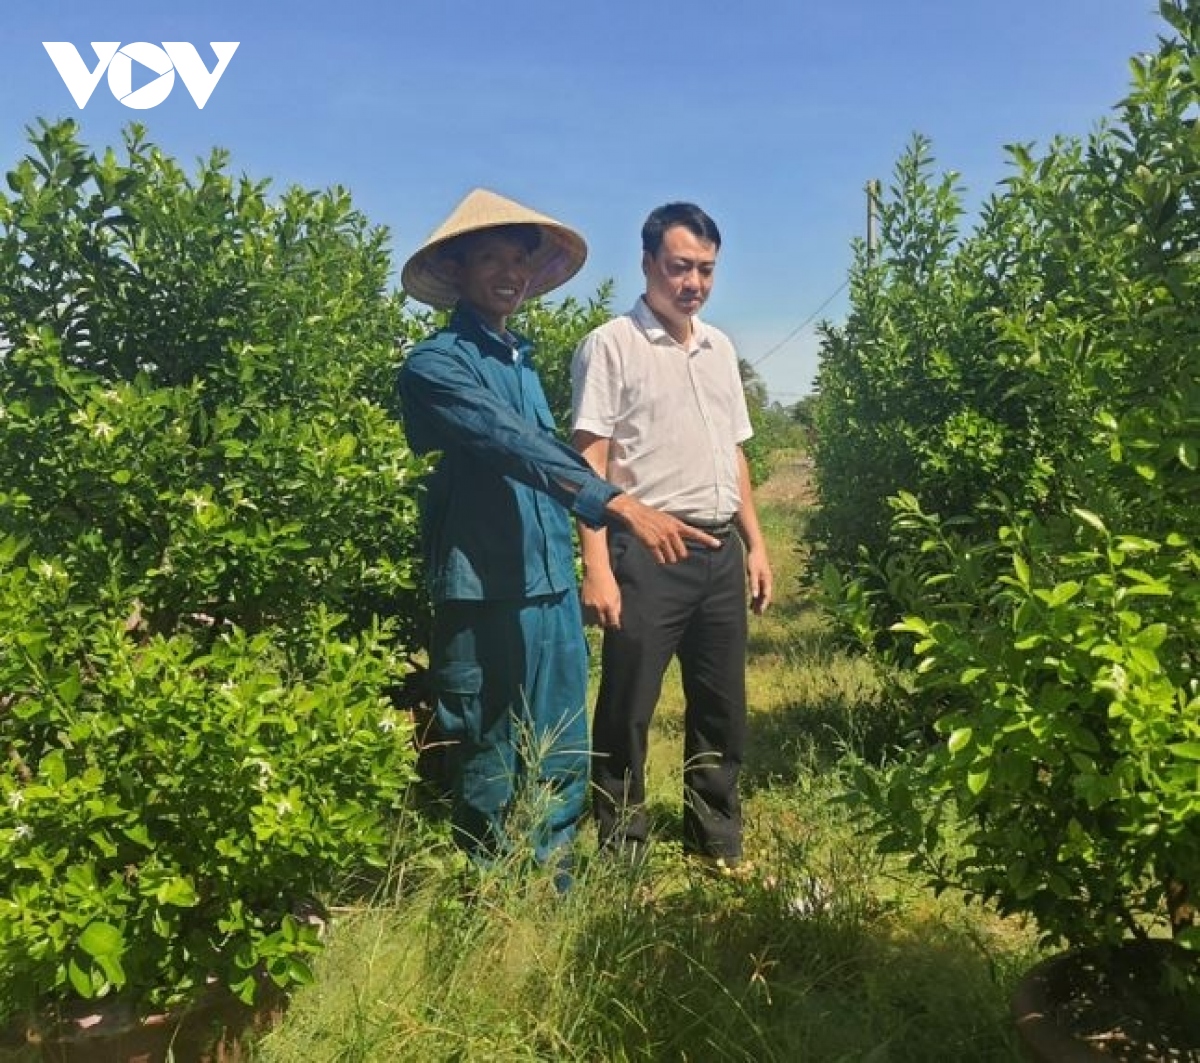 Nông dân Quảng Nam làm giàu từ trồng hoa và quất cảnh